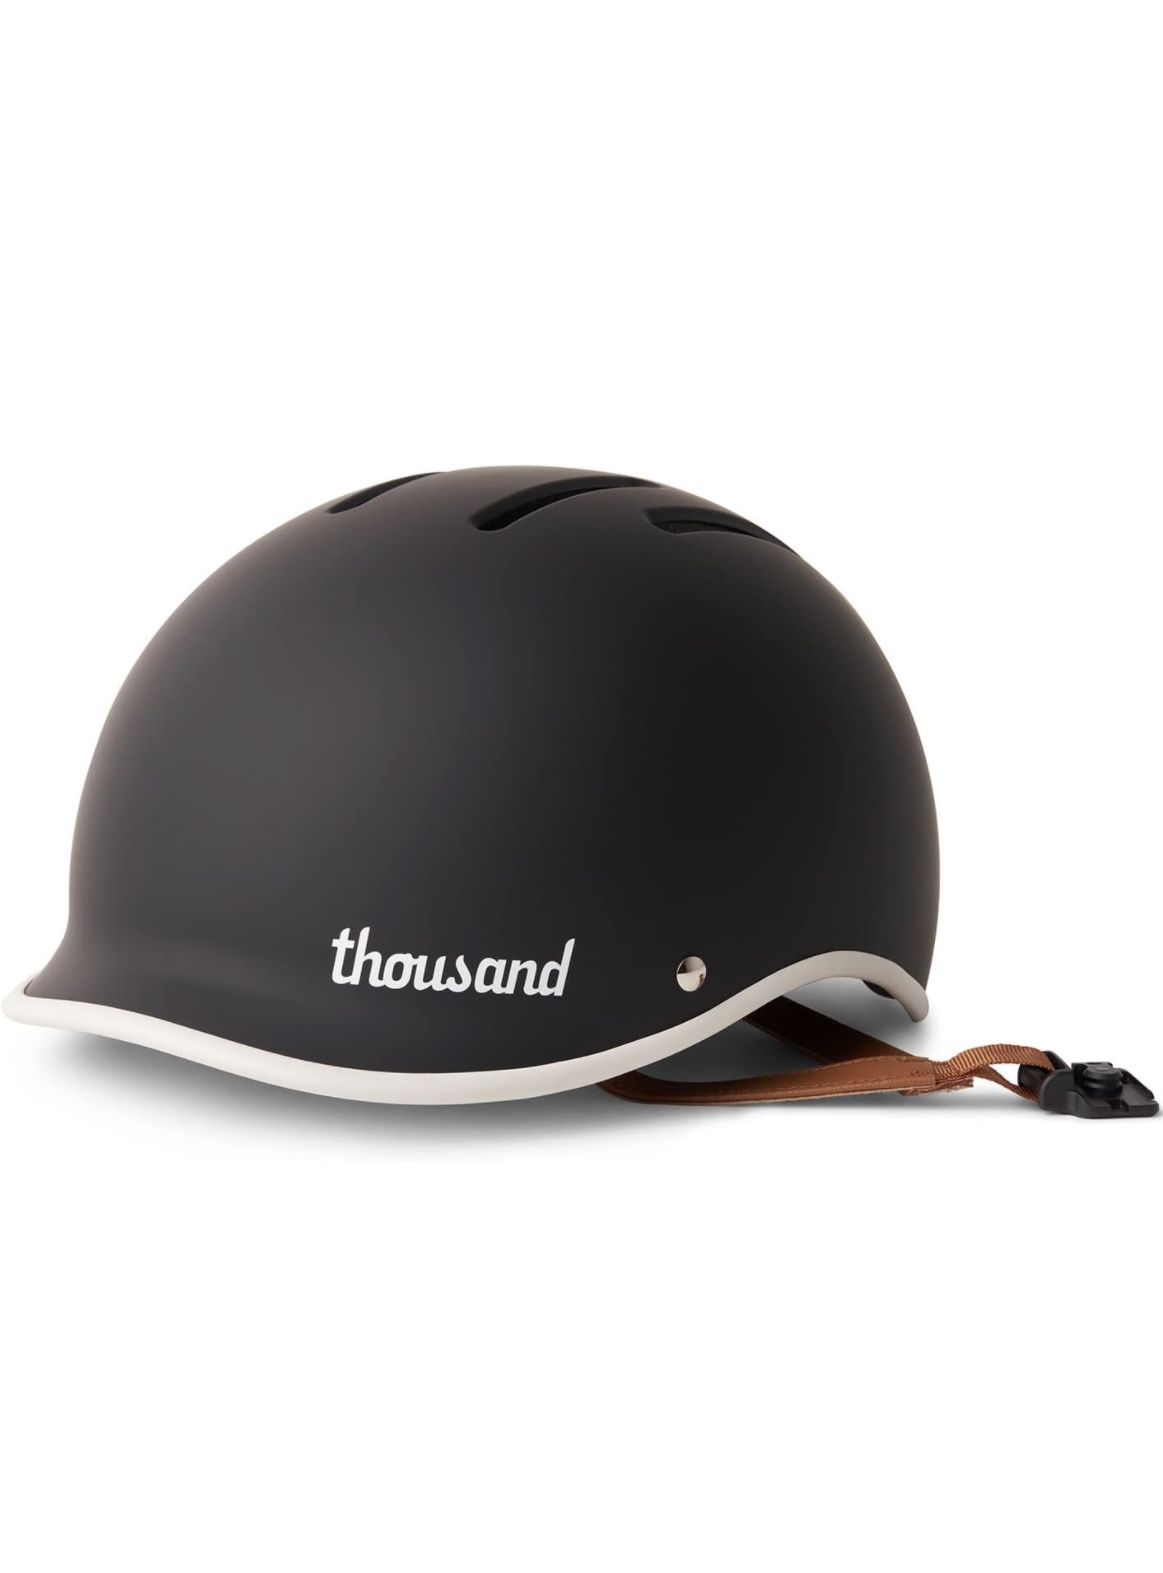 Thousands Heritage 2.0 Helmet 